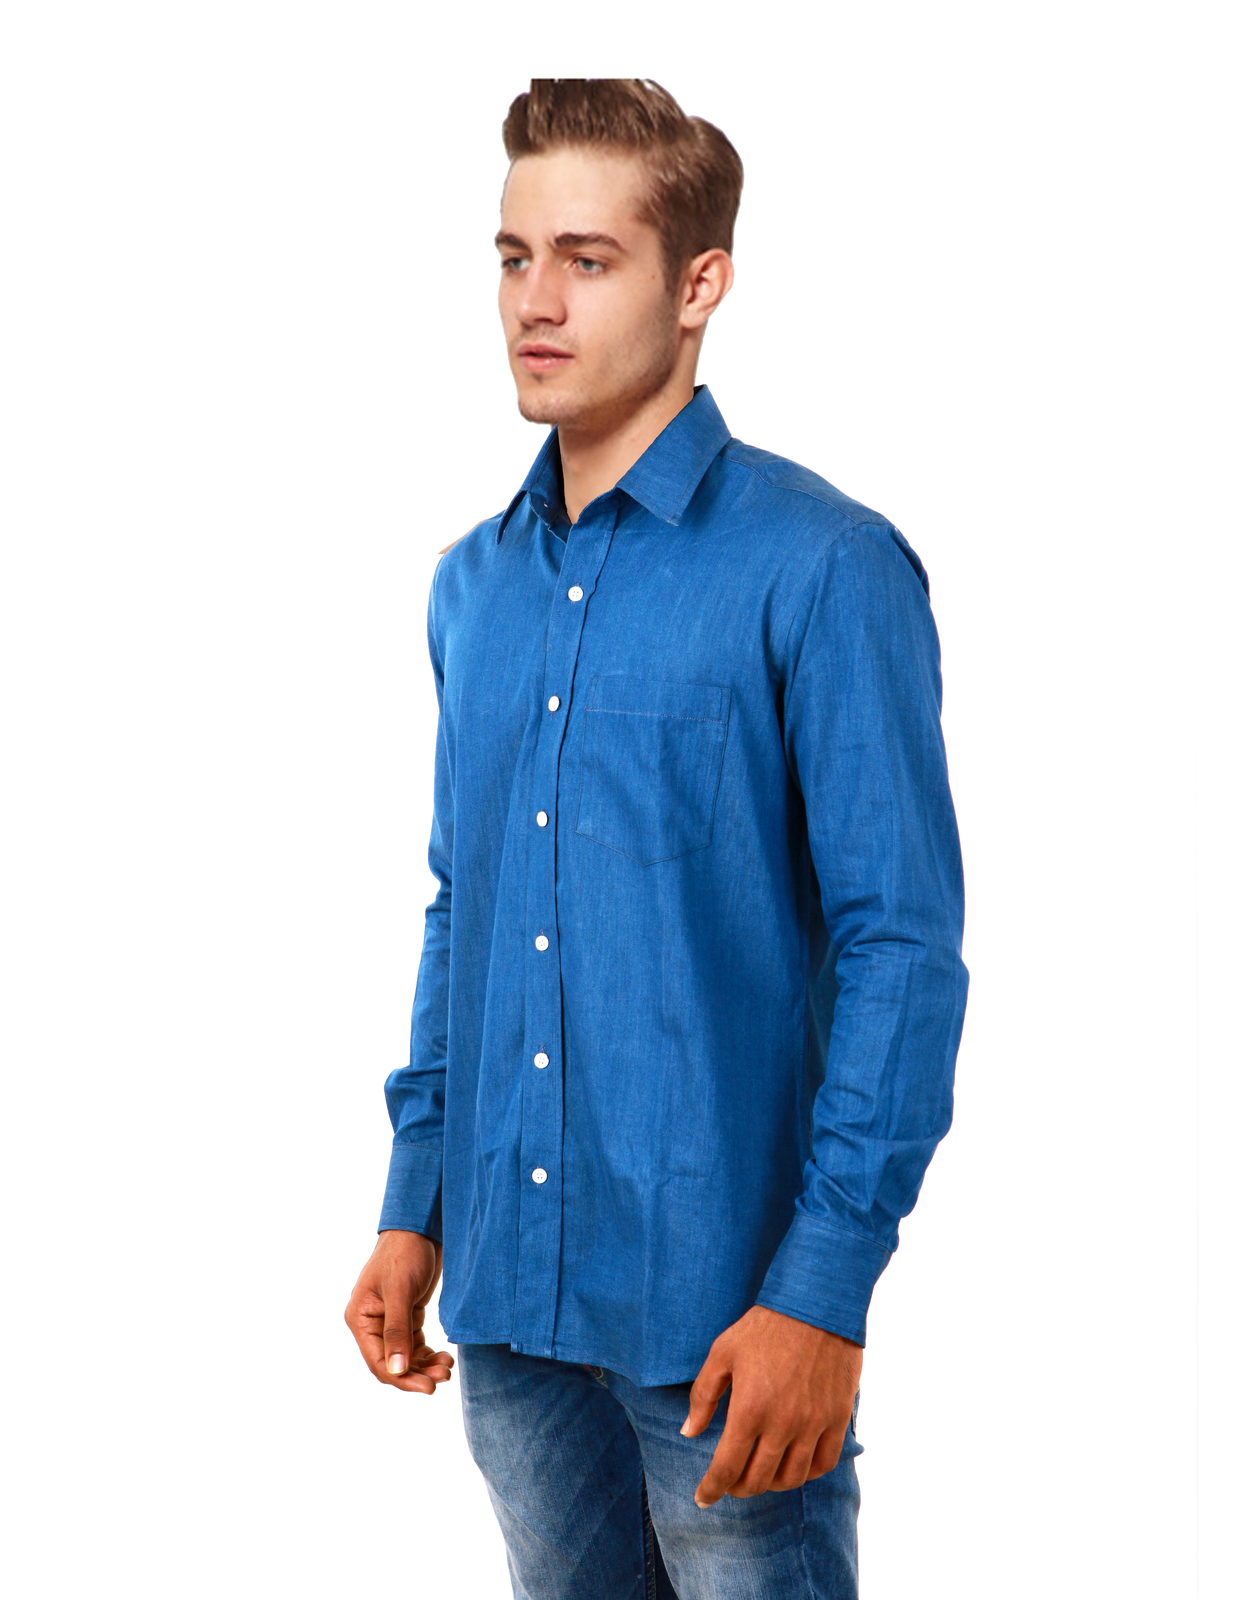 COBRIO Indigo Blue Denim Long Sleeve Casual Shirt - Casual Shirts